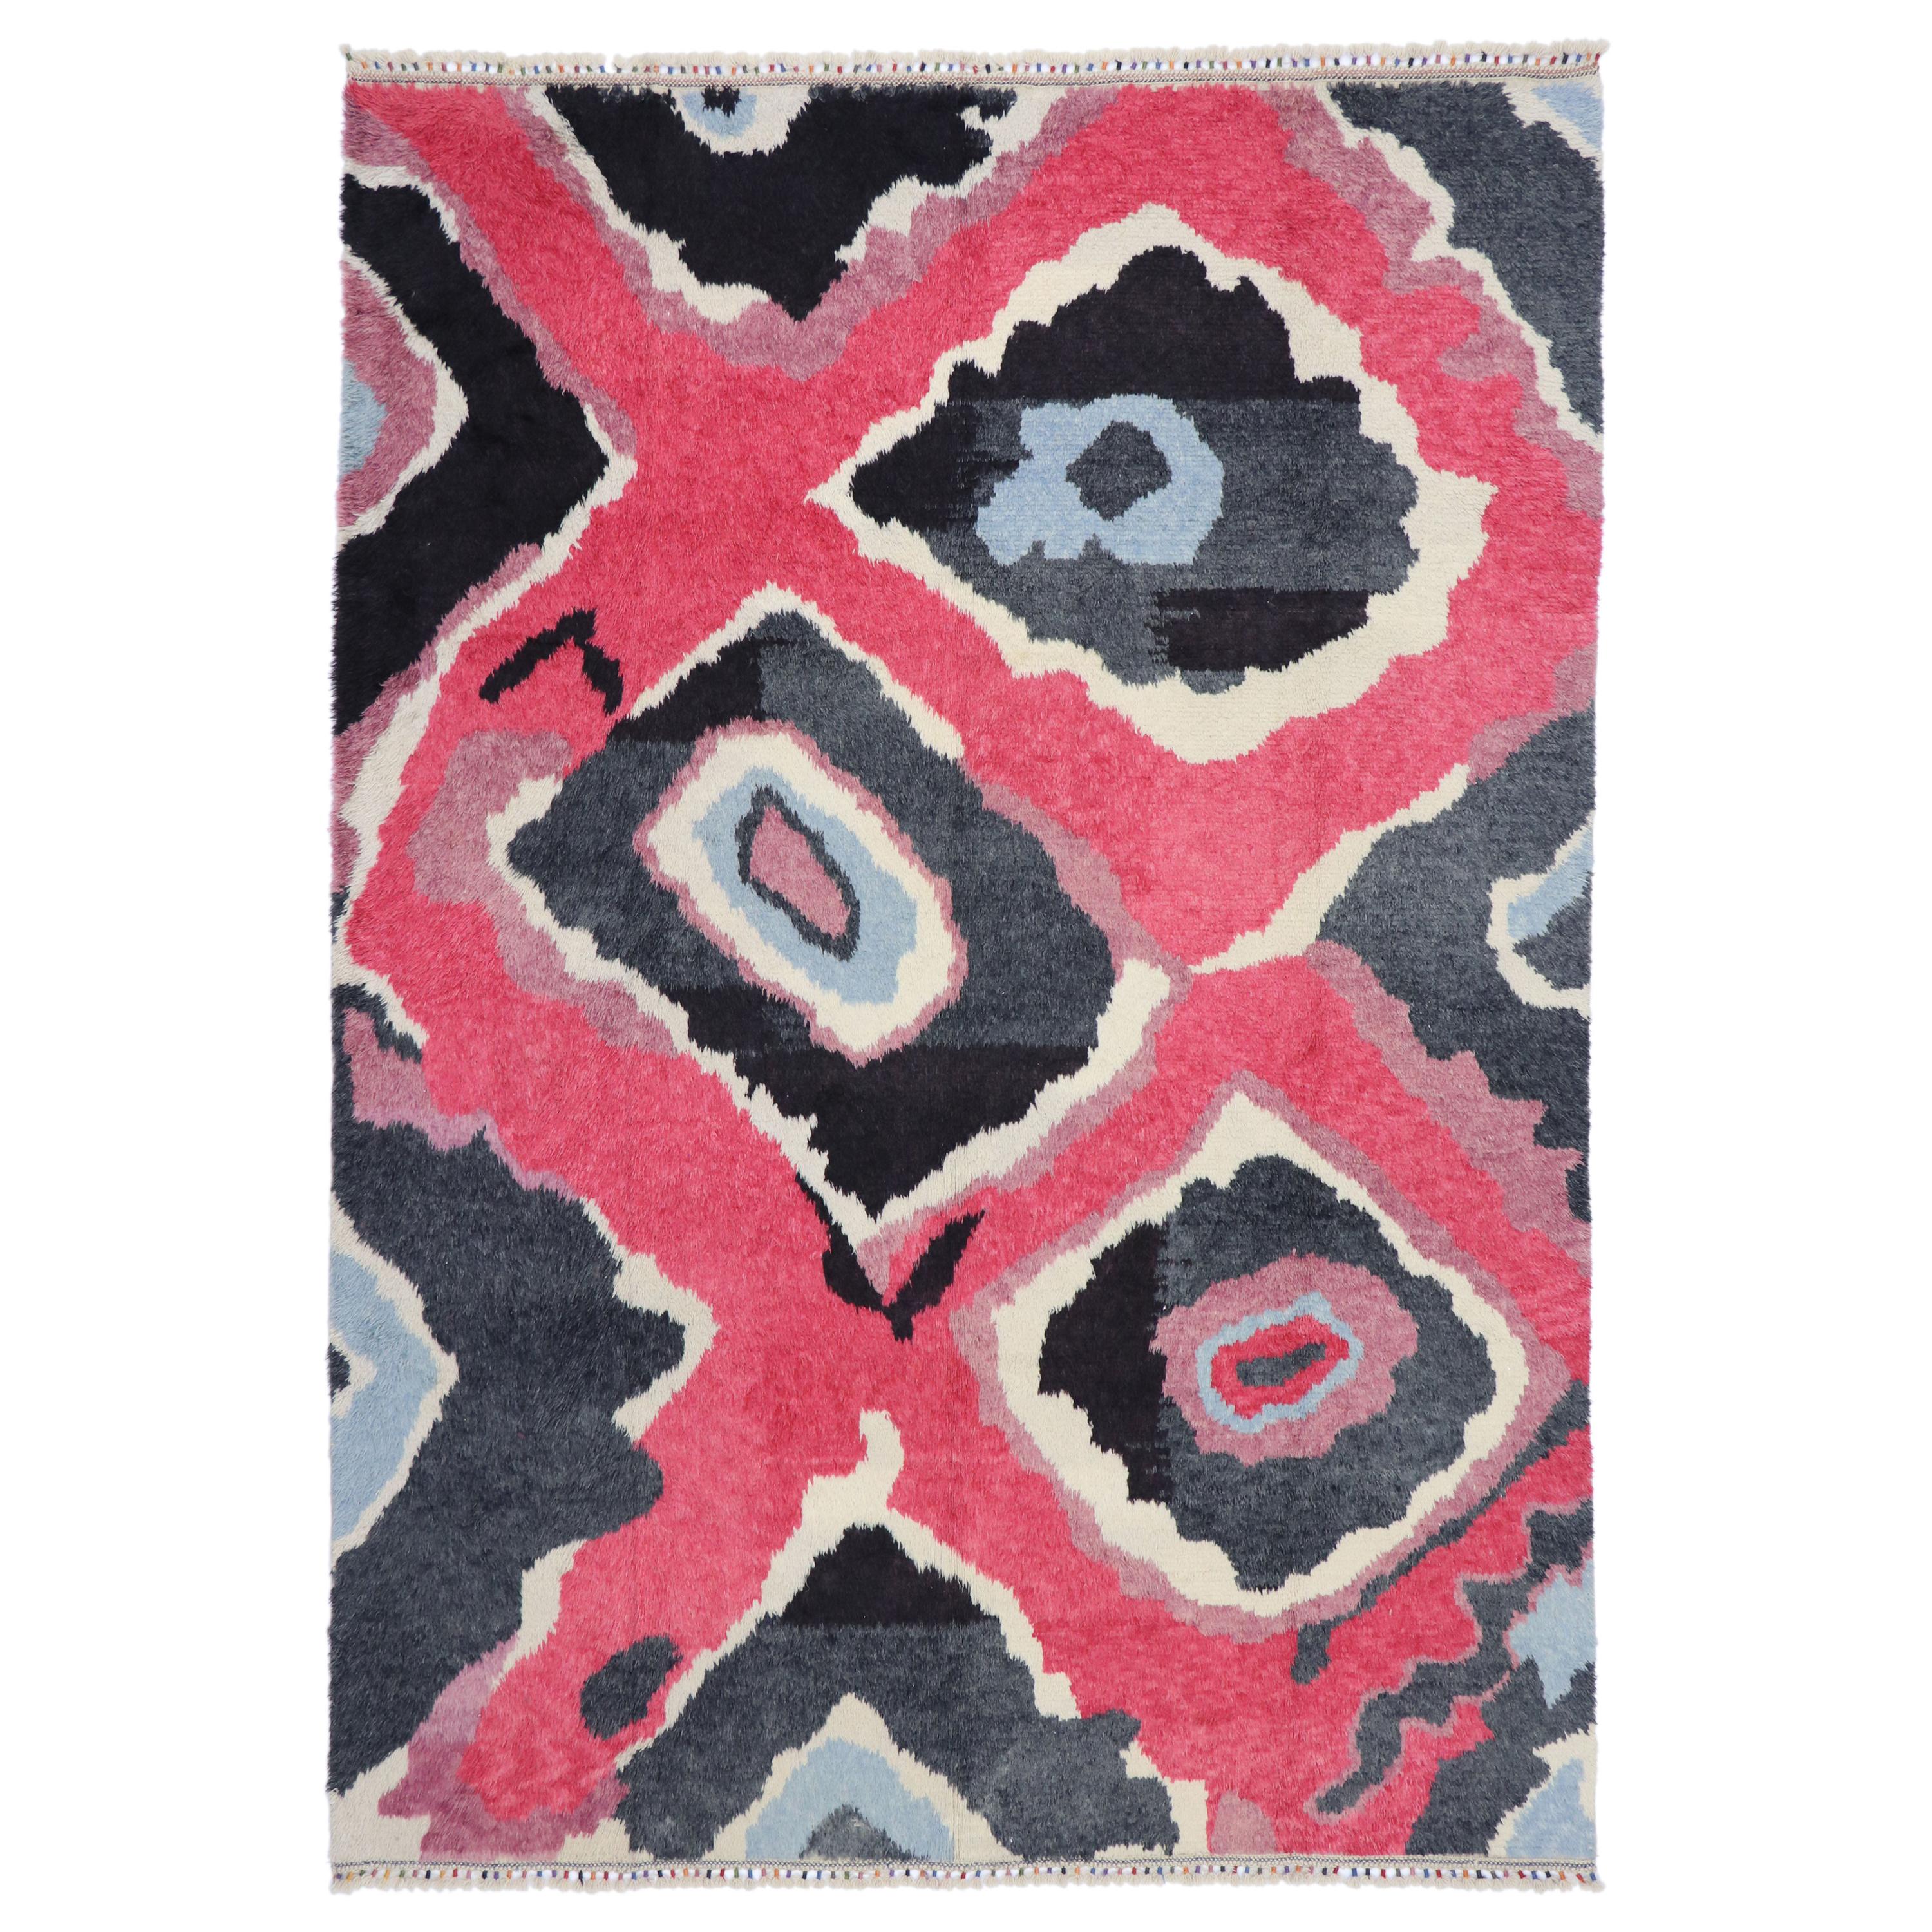 Bunter zeitgenössischer Tulu Shag-Teppich, inspiriert von Sonia Delaunay